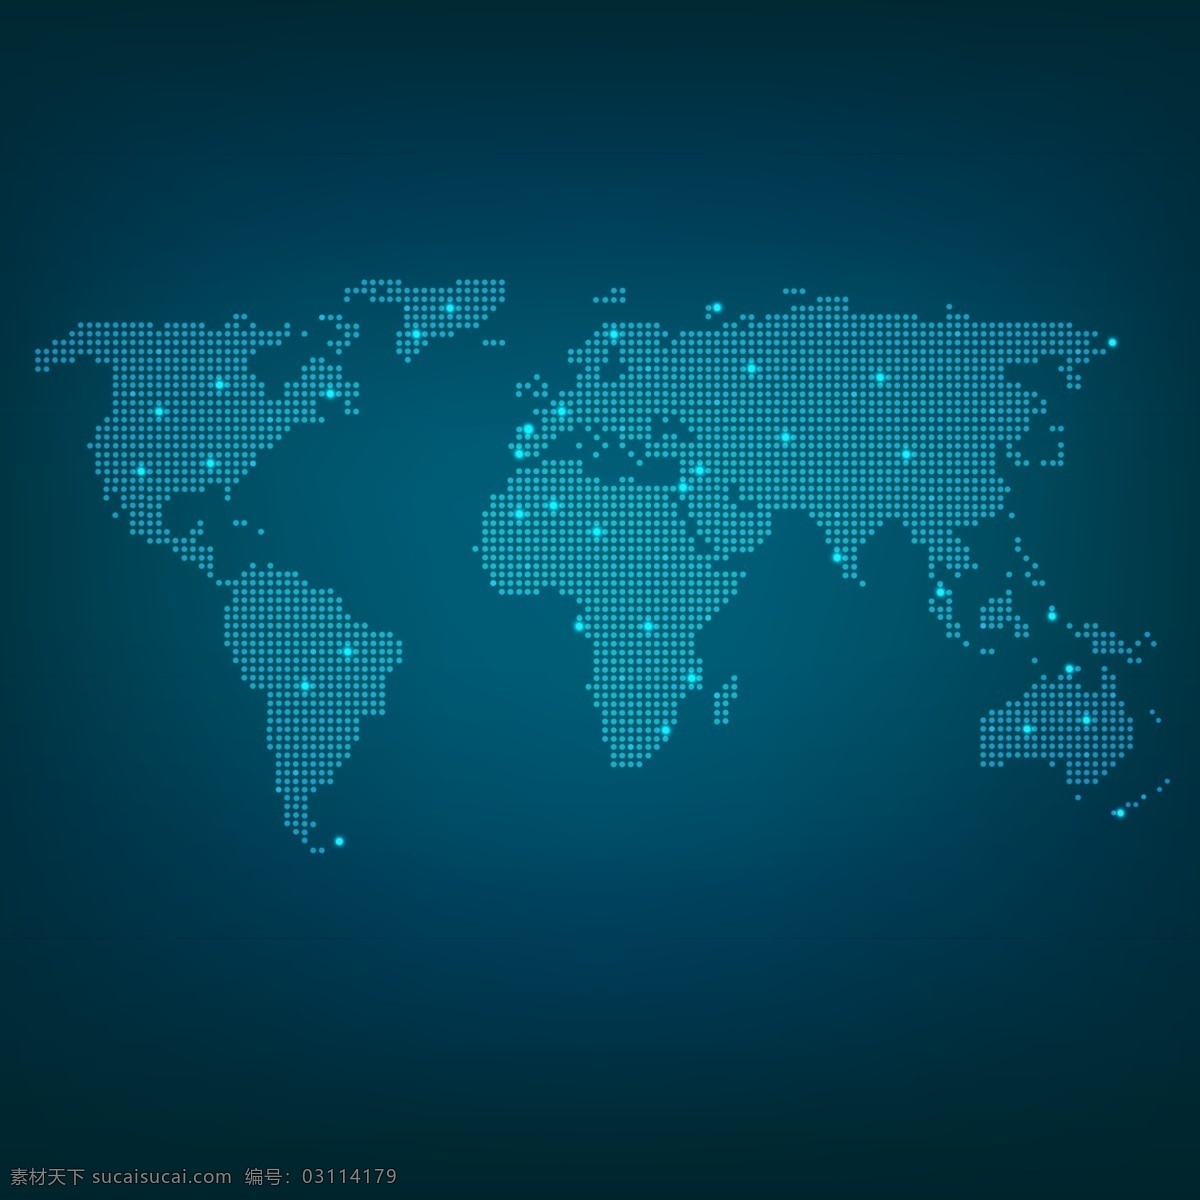 圆点 全球 矢量 文件 科技感 科技感全球 蓝色全球背景 深蓝背景 世界全球 科技感背景 全球背景 闪光 矢量文件 设计素材 生活百科 学习用品